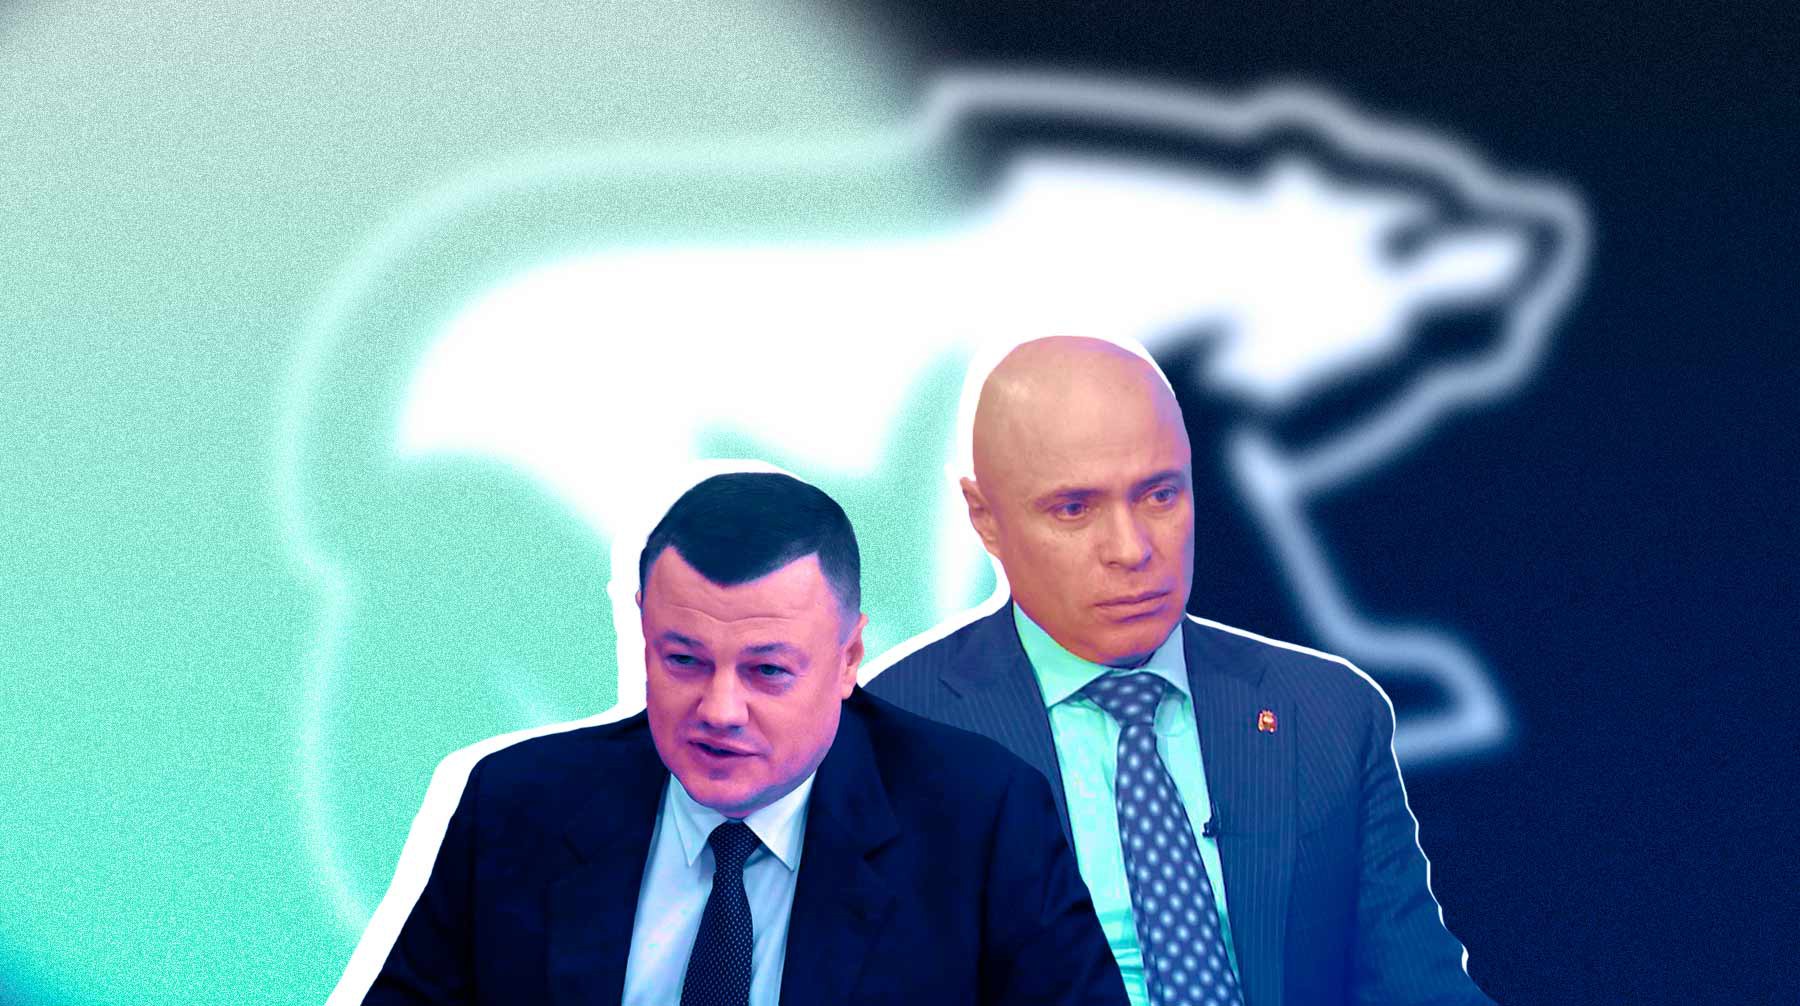 Dailystorm - Губернаторы двух регионов сплотили ряды «Единой России» на праймериз